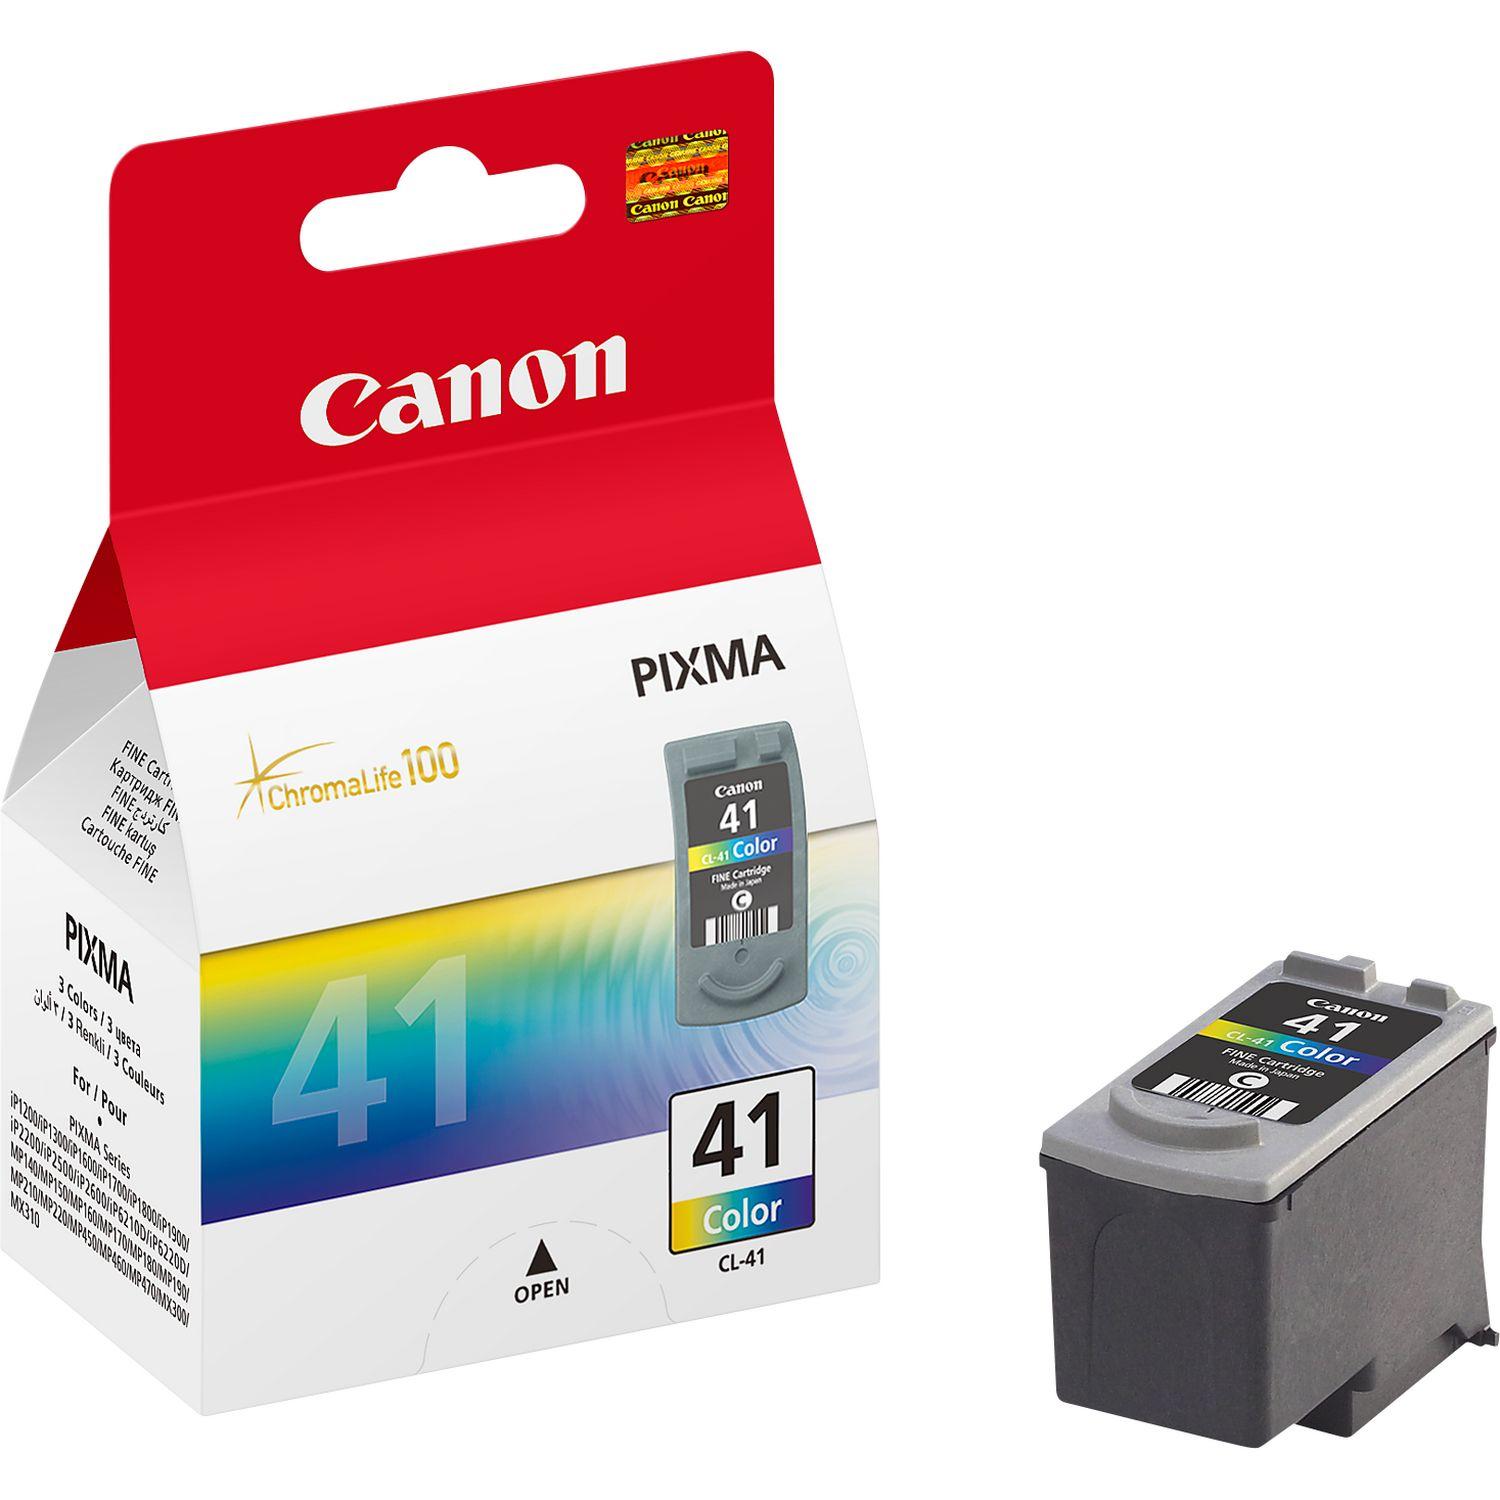 Где можно купить картридж для принтера. Картридж для принтера Canon PIXMA ip1800. Картридж Canon CL-38 цветной. Canon PIXMA 41 картридж. Картридж Canon 0617b025.